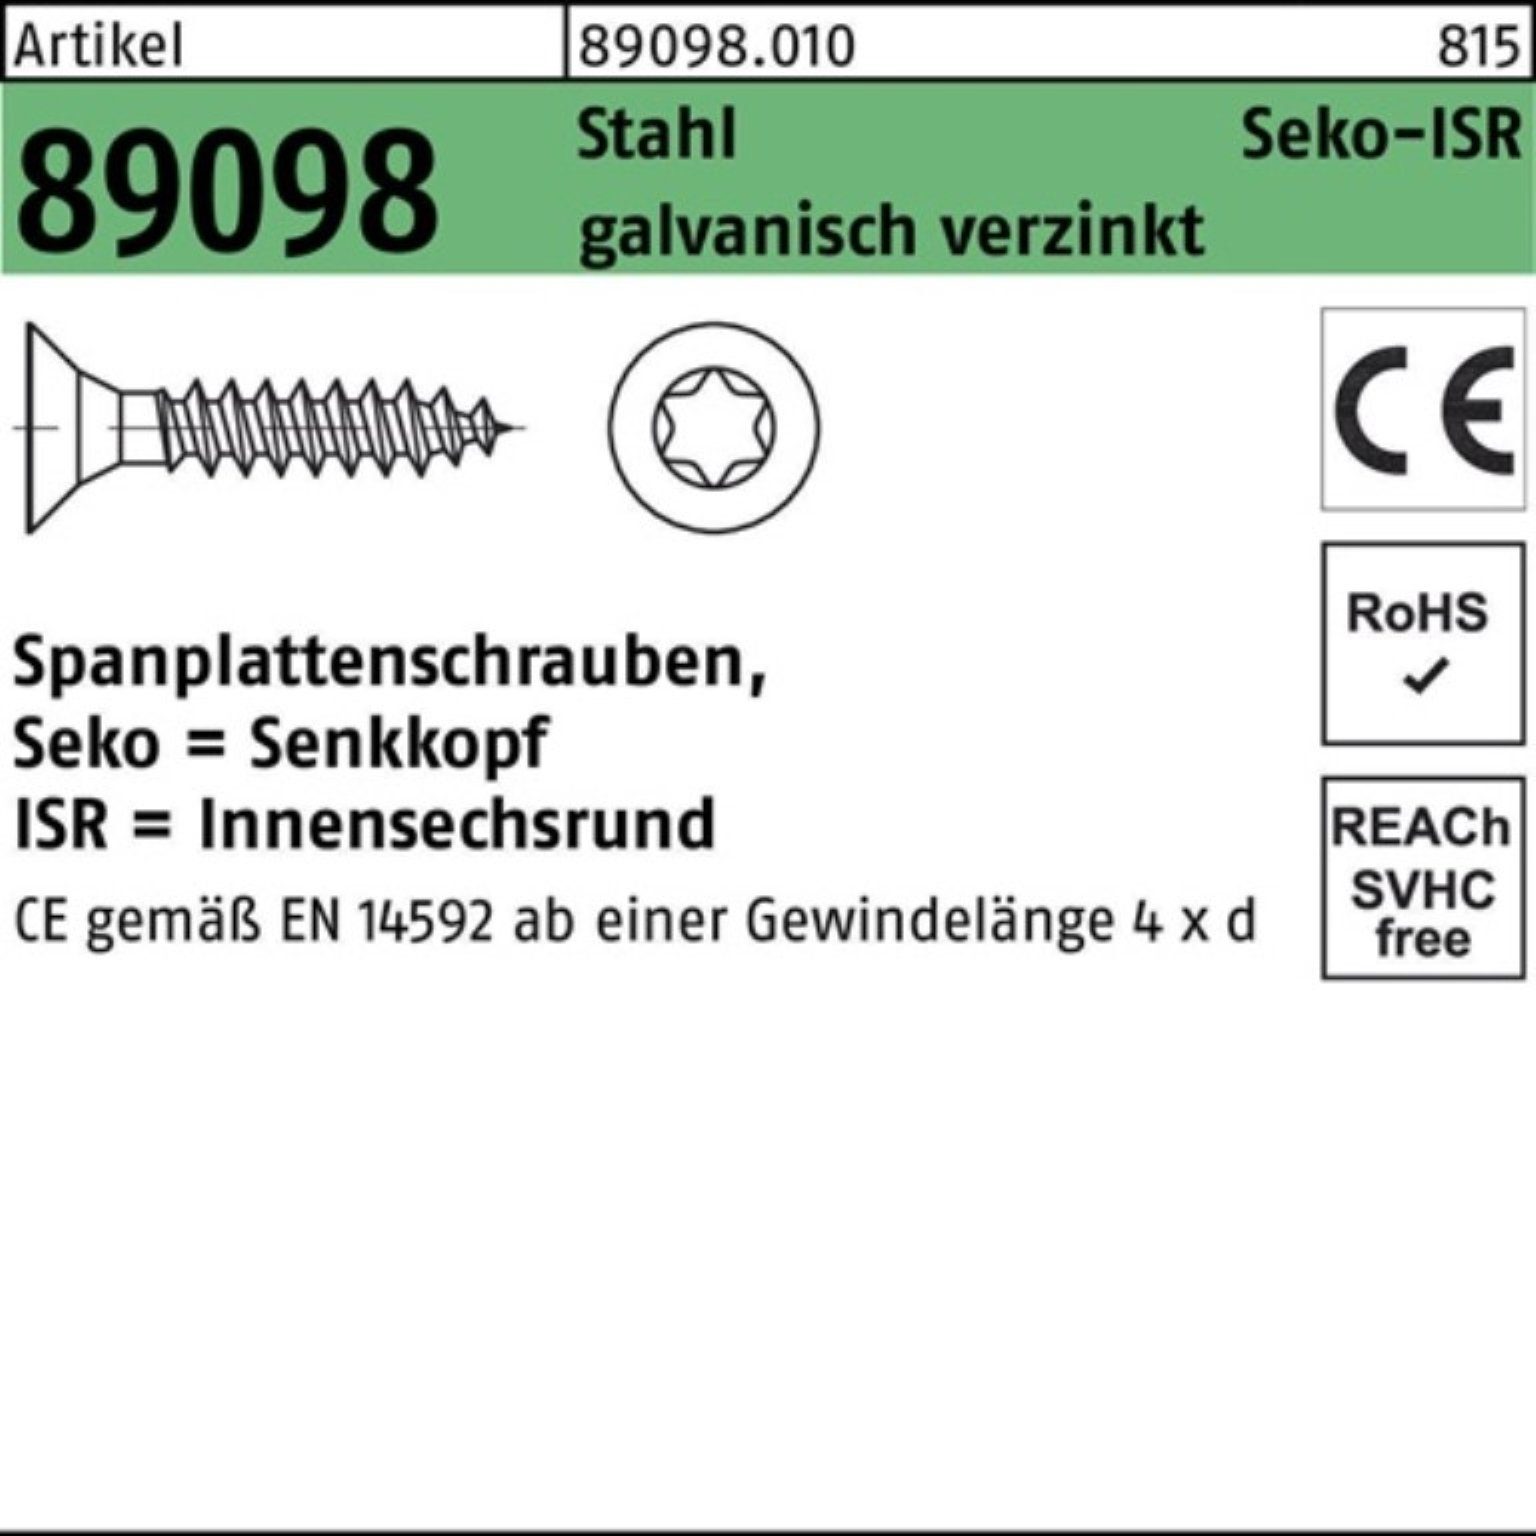 Reyher Spanplattenschraube VG ISR gal R 1000er 89098 SEKO Stahl 3x45-T10 Pack Spanplattenschraube